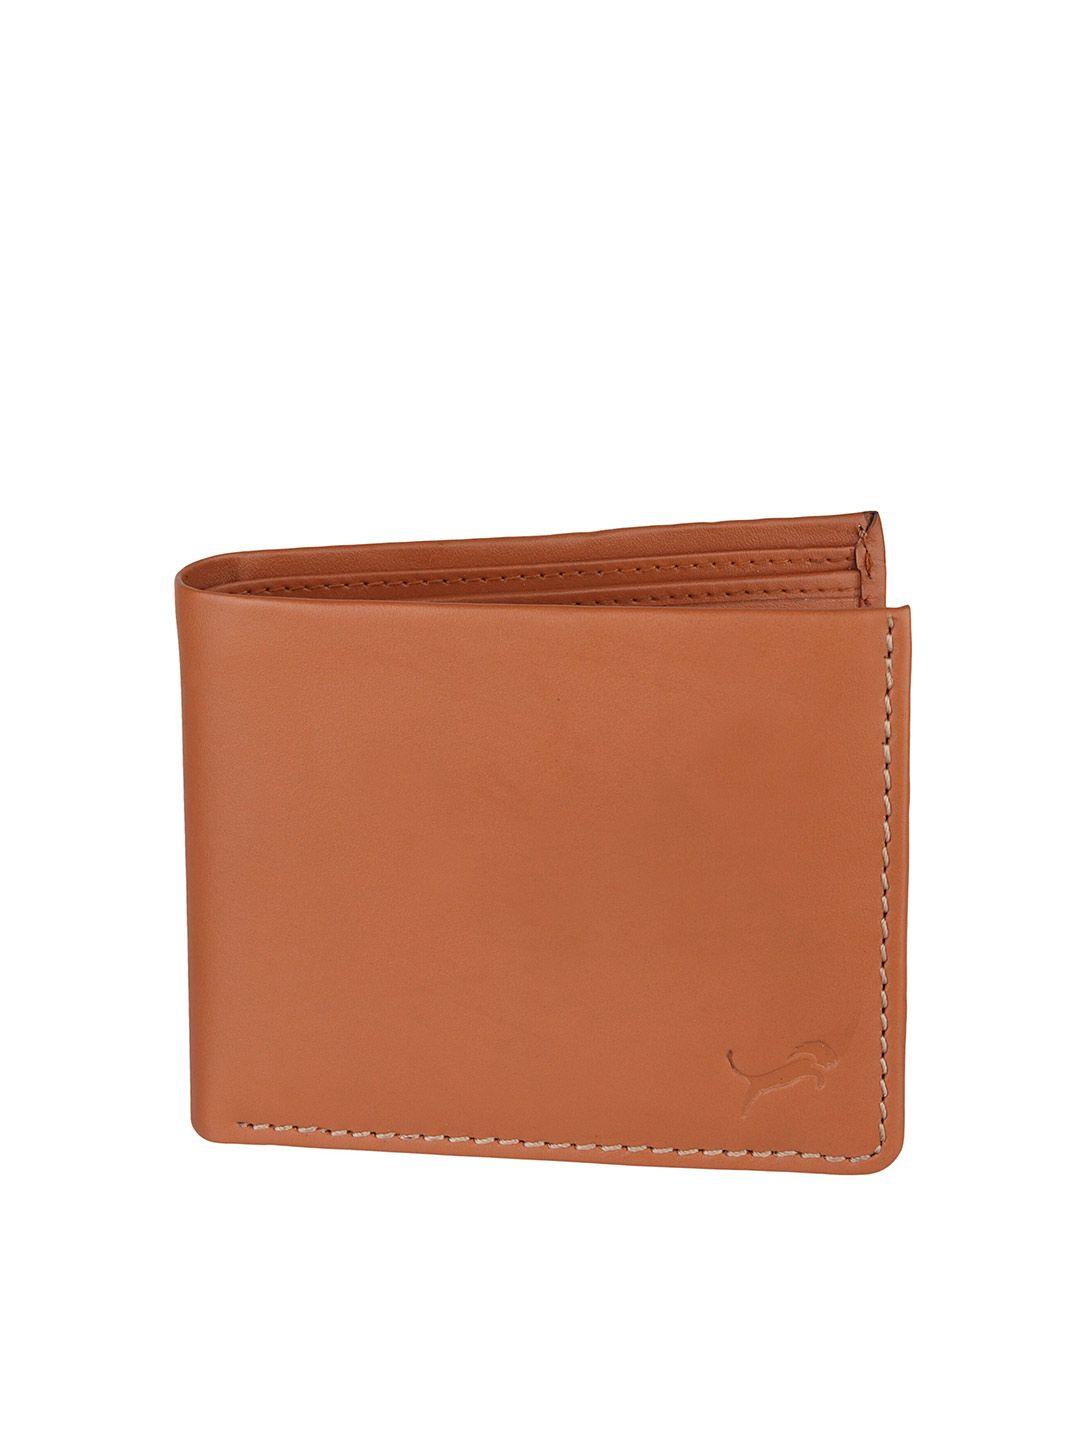 wild edge men tan leather two fold wallet